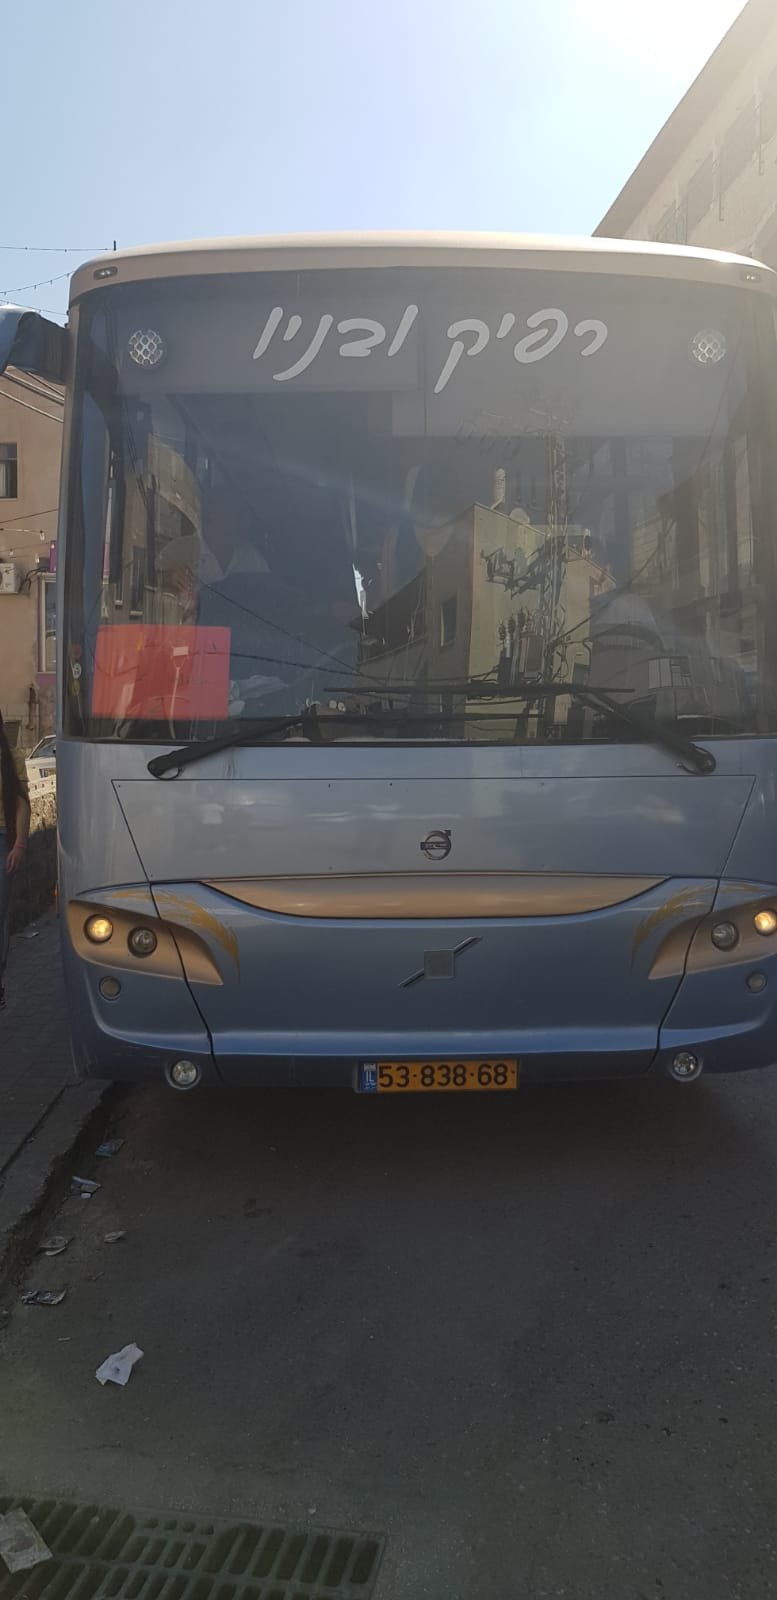 انطلاق الحافلات الى تل أبيب للمشاركة في امّ المظاهرات -0